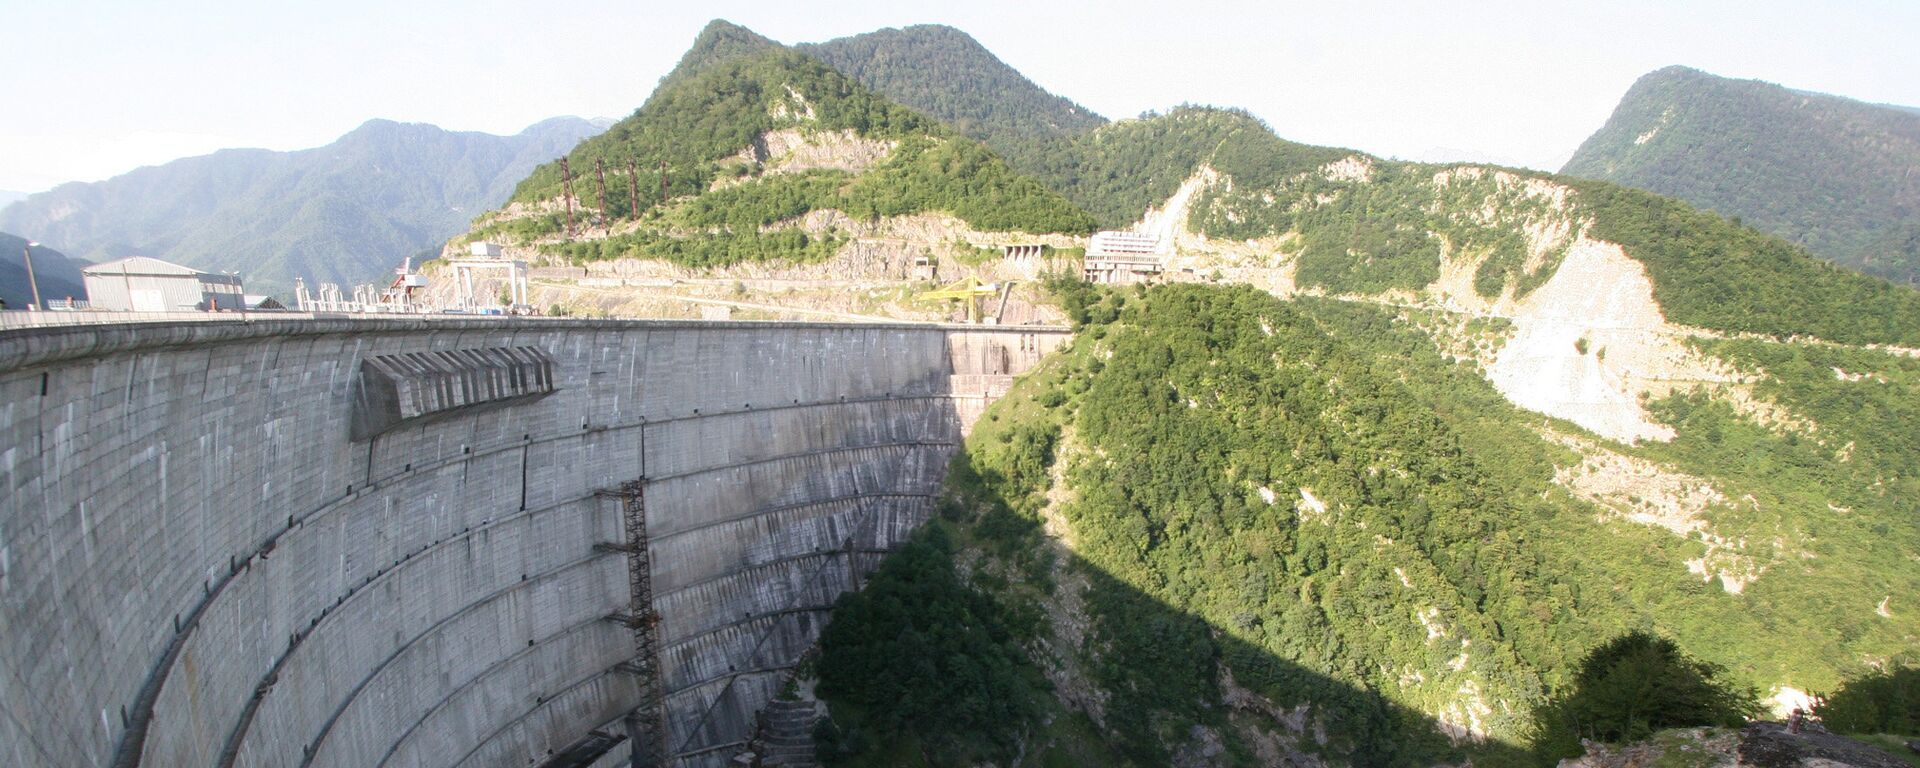 Ингури ГЭС - Sputnik Грузия, 1920, 19.07.2017